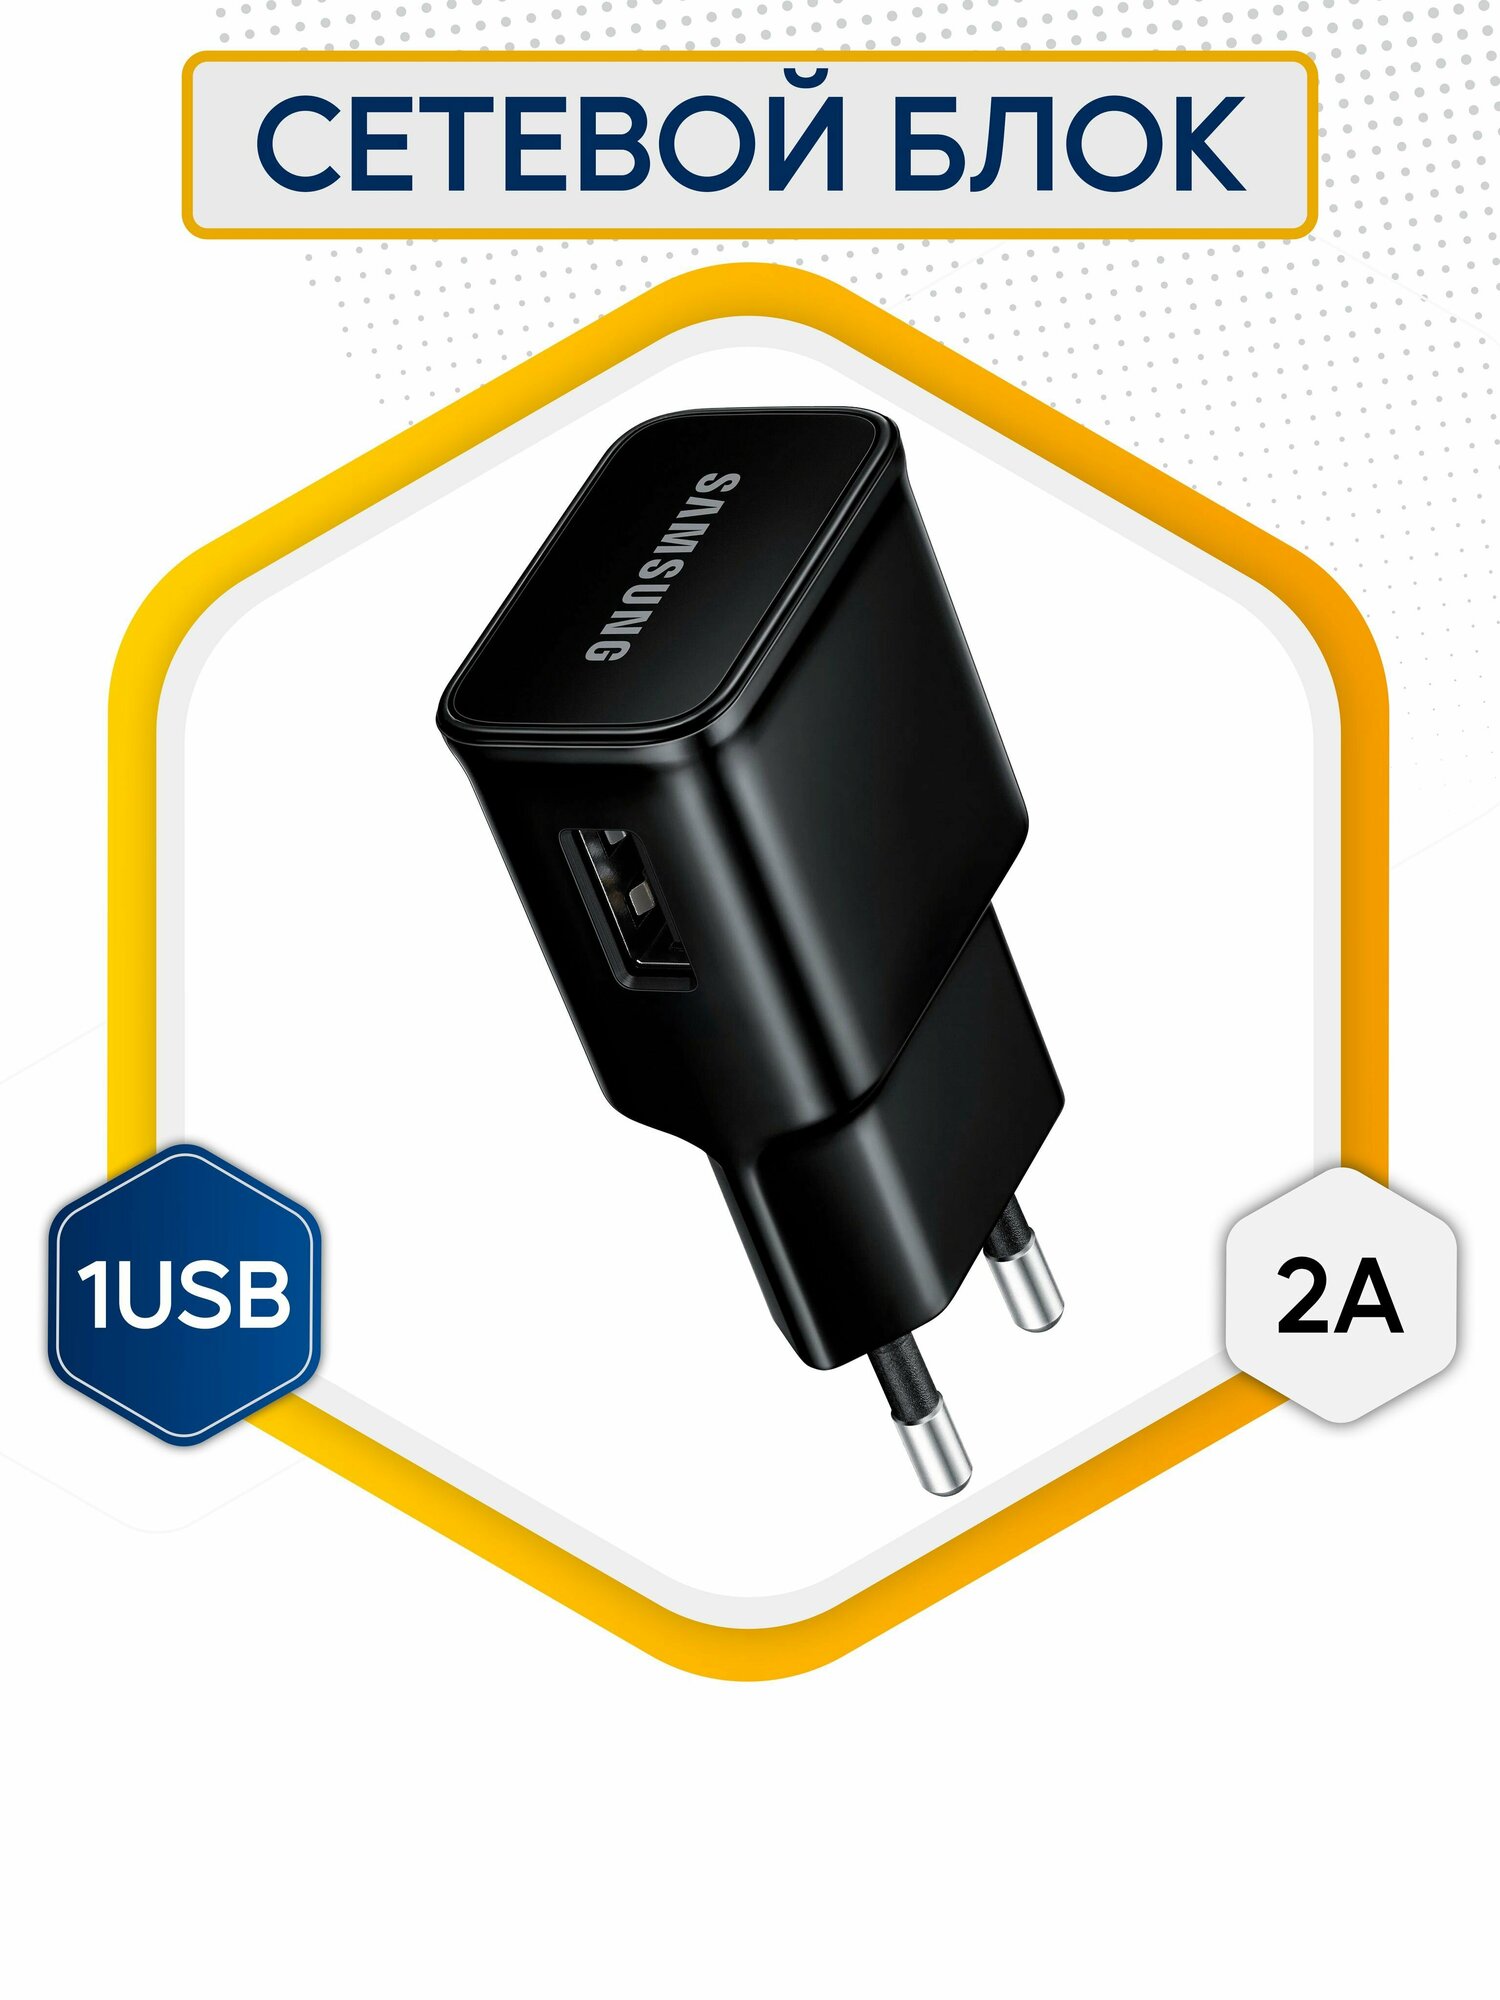 Сетевой Блок питания USB S4 (2A, 1USB) / Сетевое Зарядное устройство / адаптер для телефона